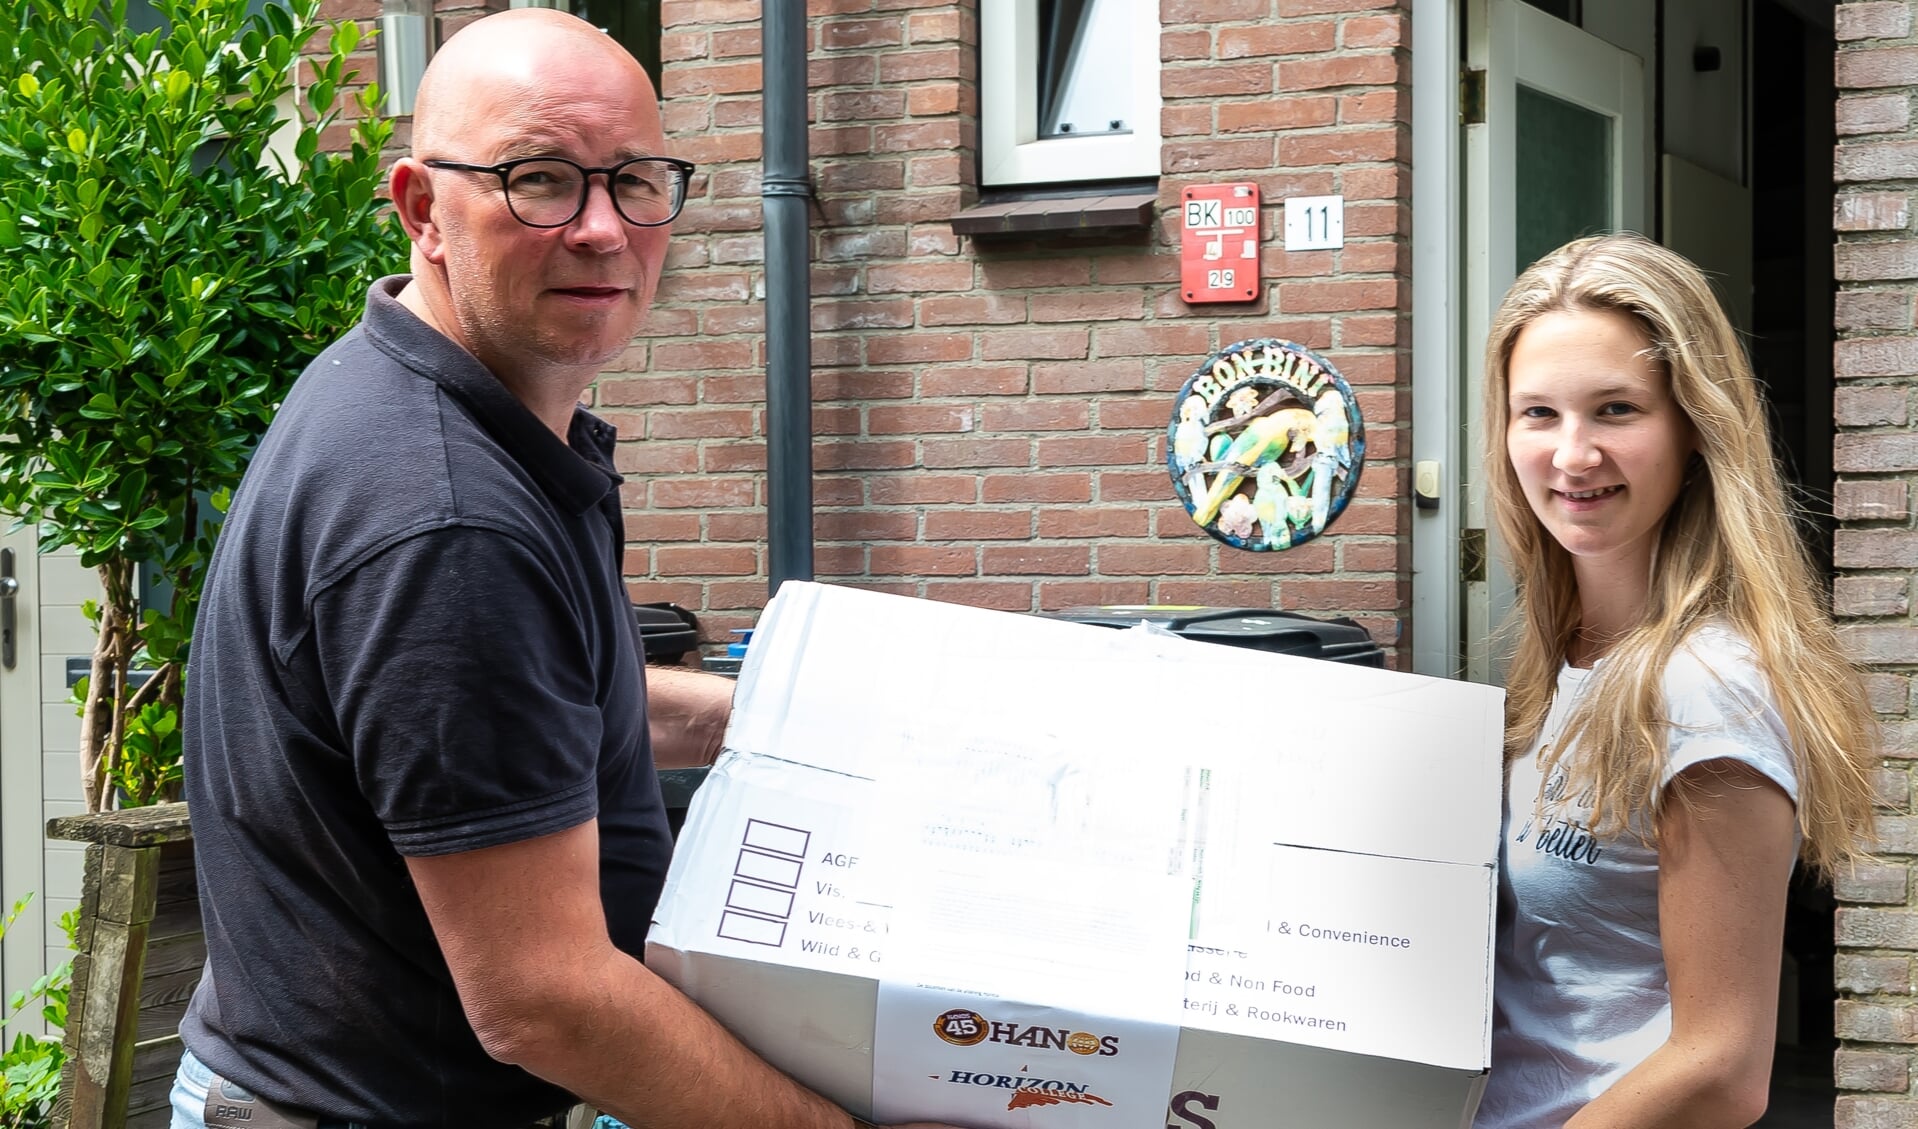 Björn Folkers overhandigt een pakket aan Nicky van Tijn. die examen doet voor  zelfstandig werkend kok.
